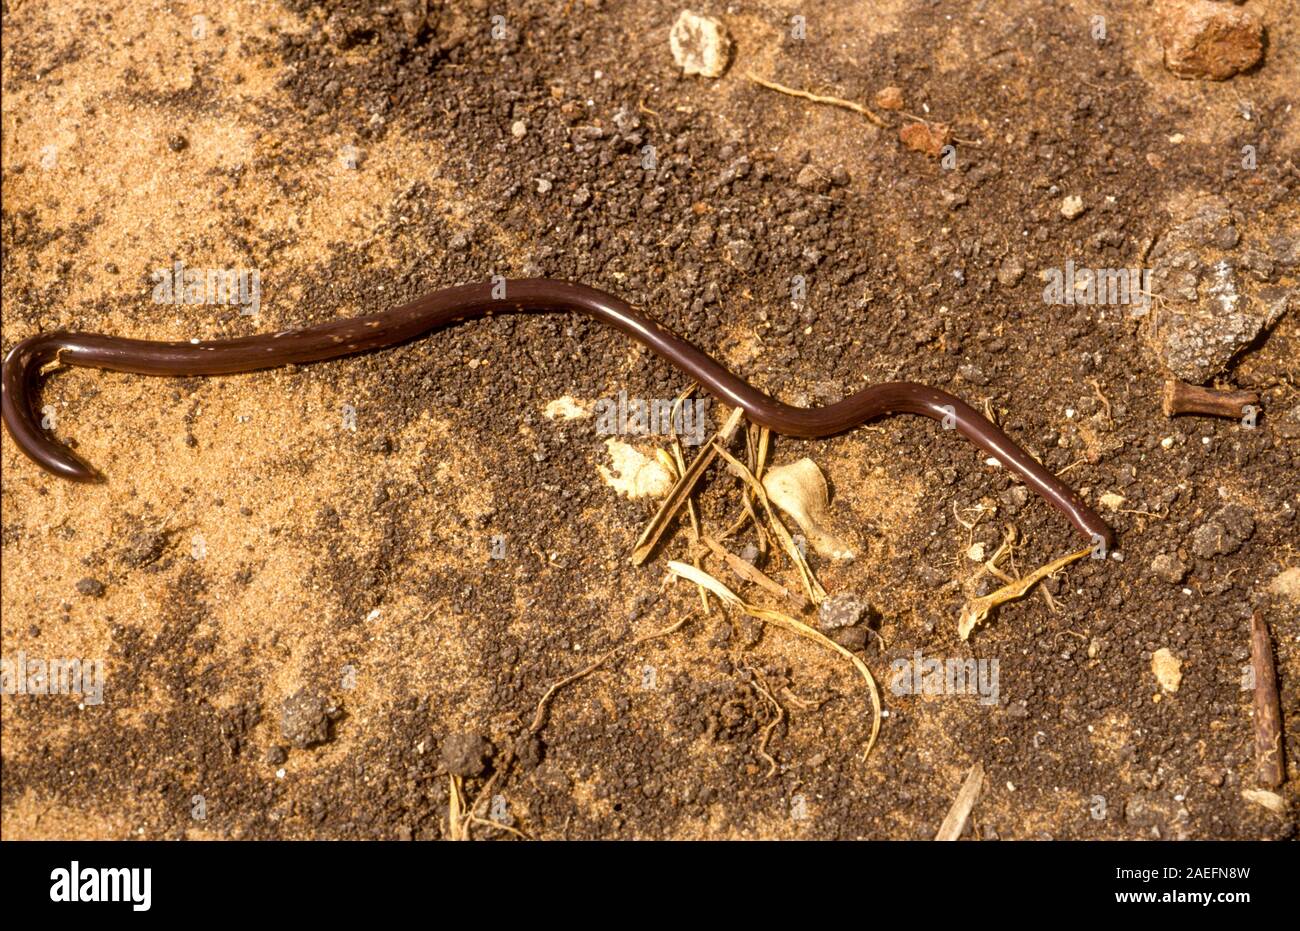 Xerotyphlops vermicularis, le serpent aveugle, serpent, ver aveugle eurasien, serpent ou serpent ver eurasien, est une espèce de serpents de la g Banque D'Images